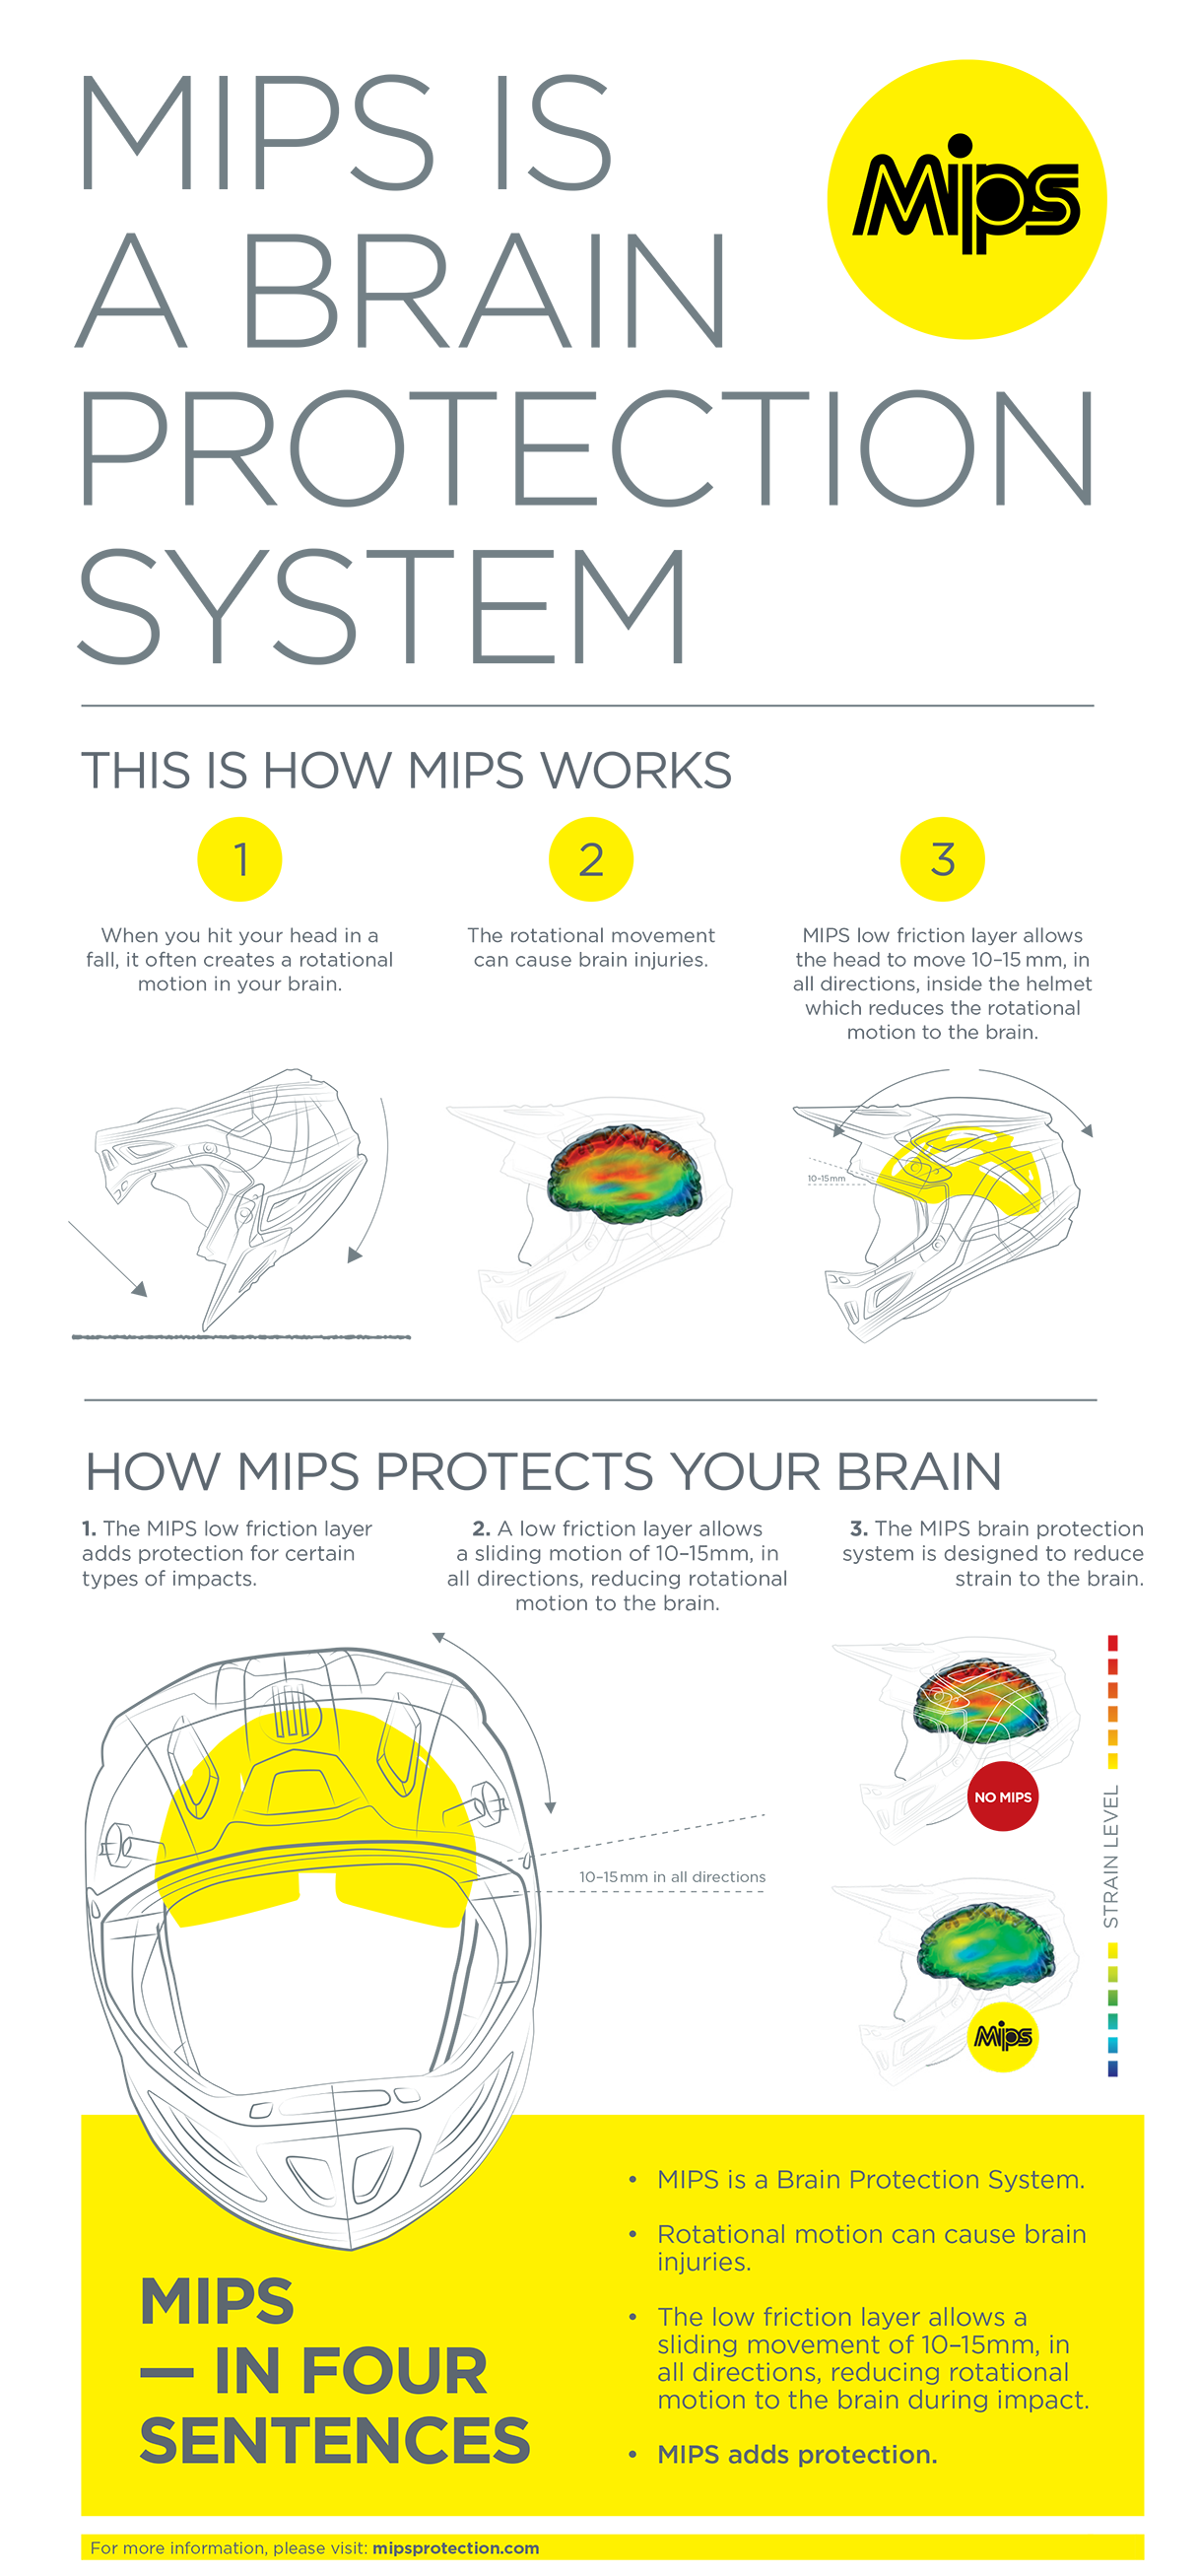 ALPINESTARS Supertech M8 Helmet - MIPS - Matte Black - 2XL 8300719-110-2X